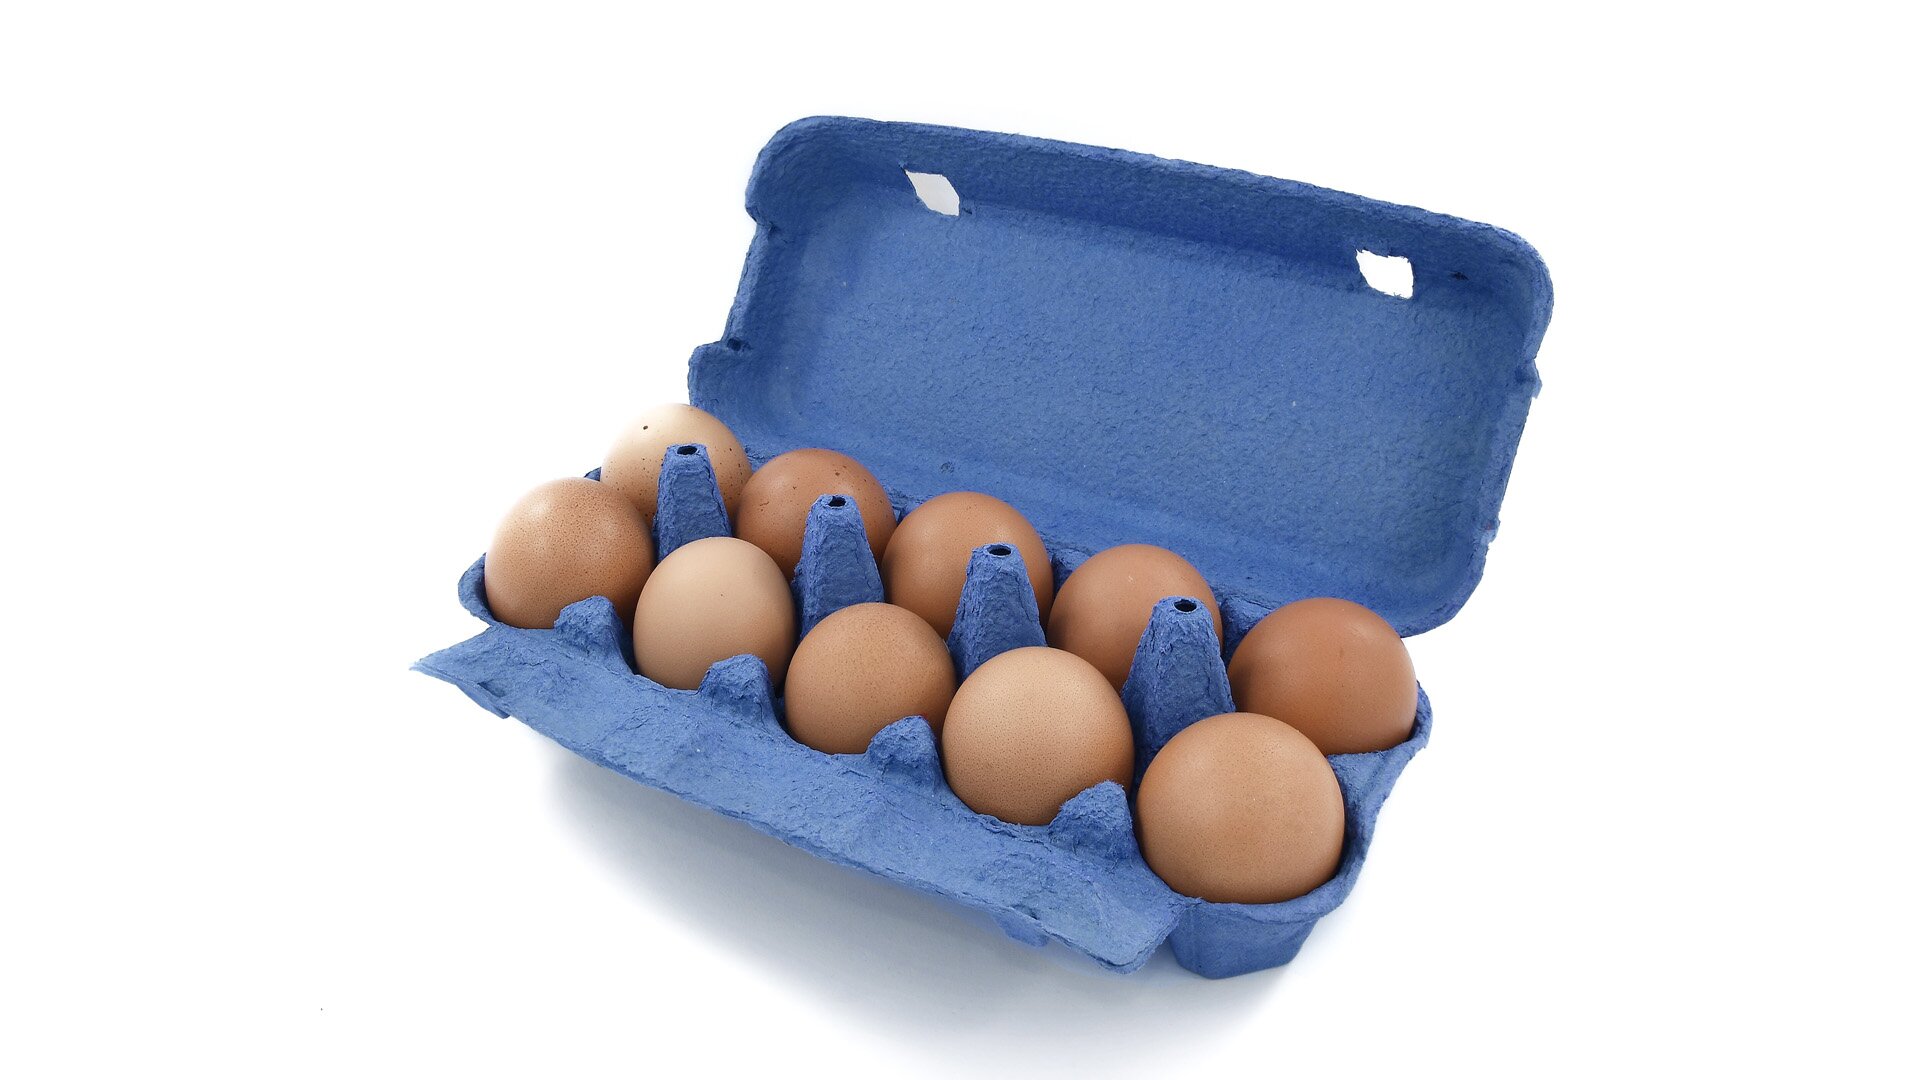 Zdjęcie przedstawia dziesięć jaj kurzych w tekturowym niebieskim opakowaniu na jaja.